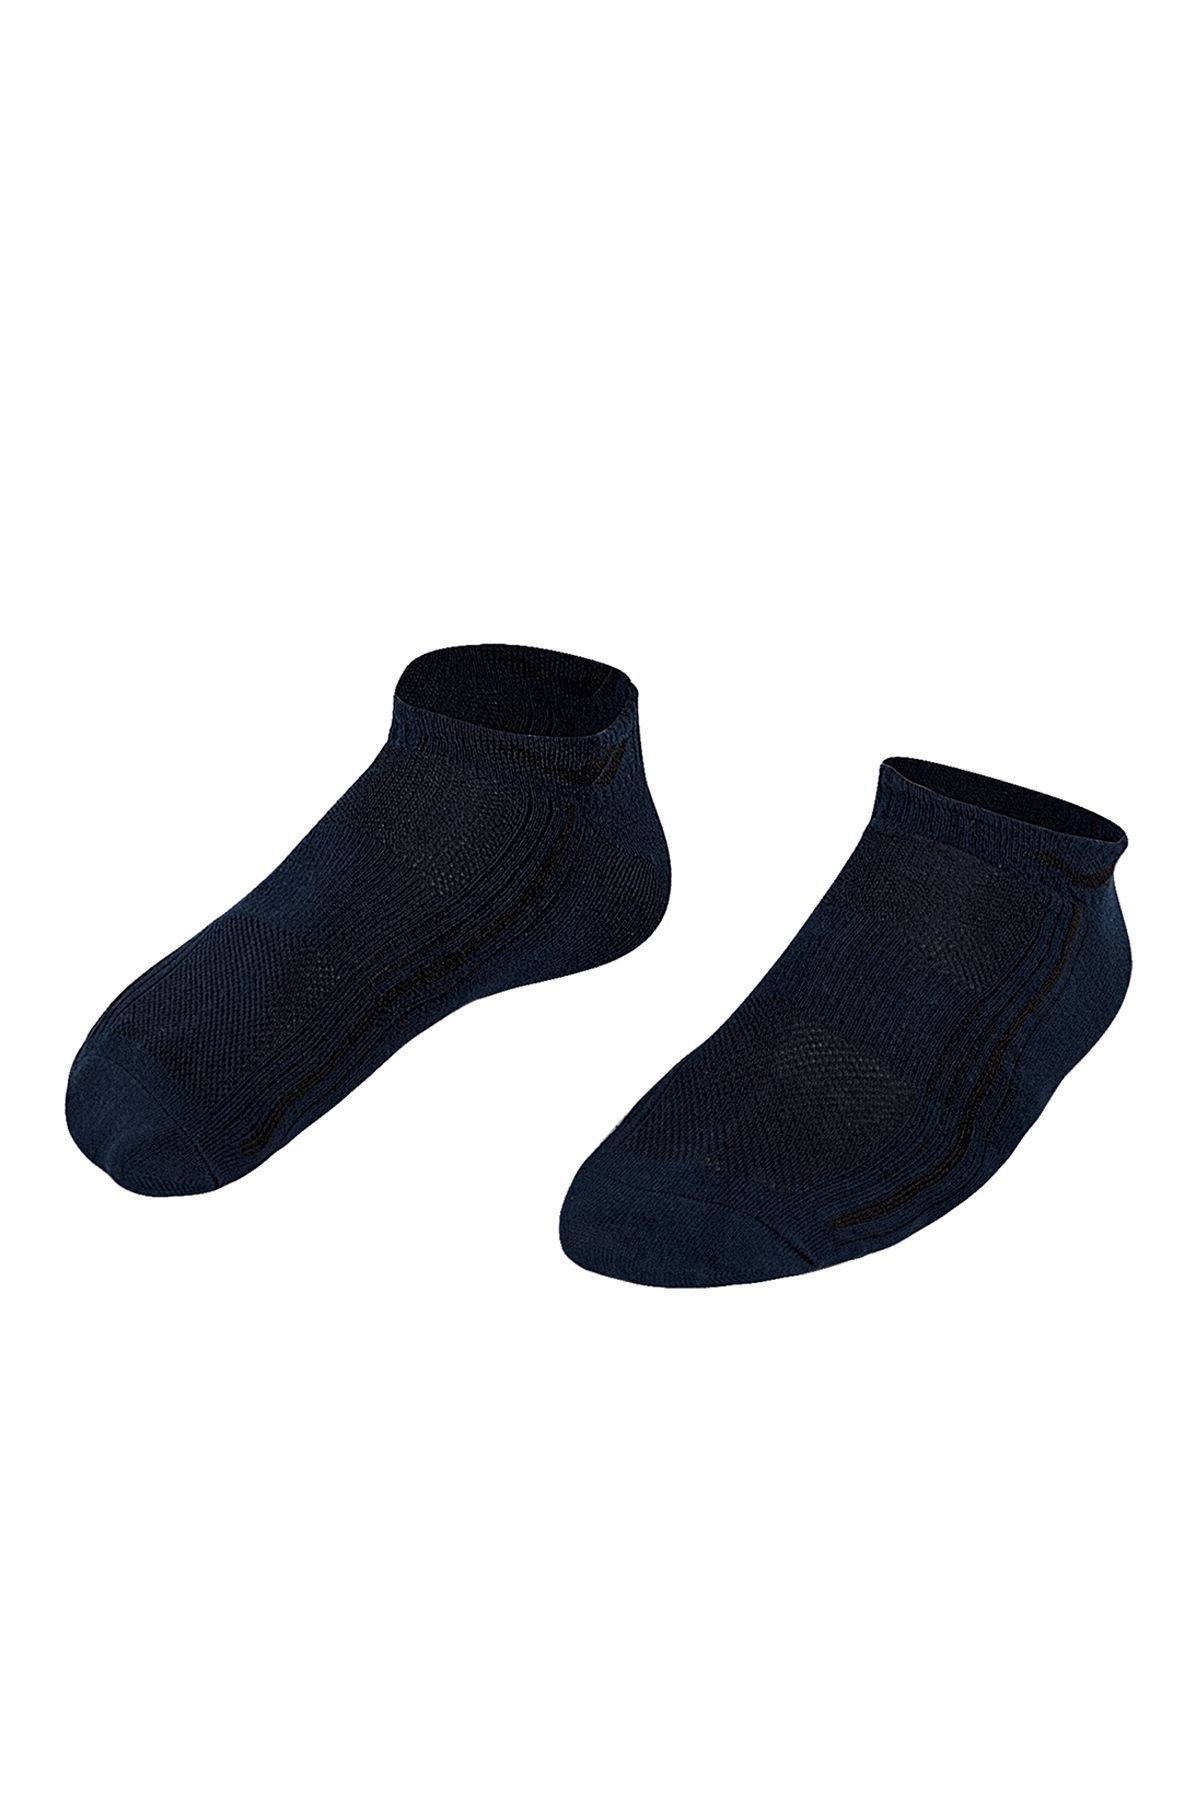 Lescon La-2194 Tekli Patik Çorap 40-45 Numara